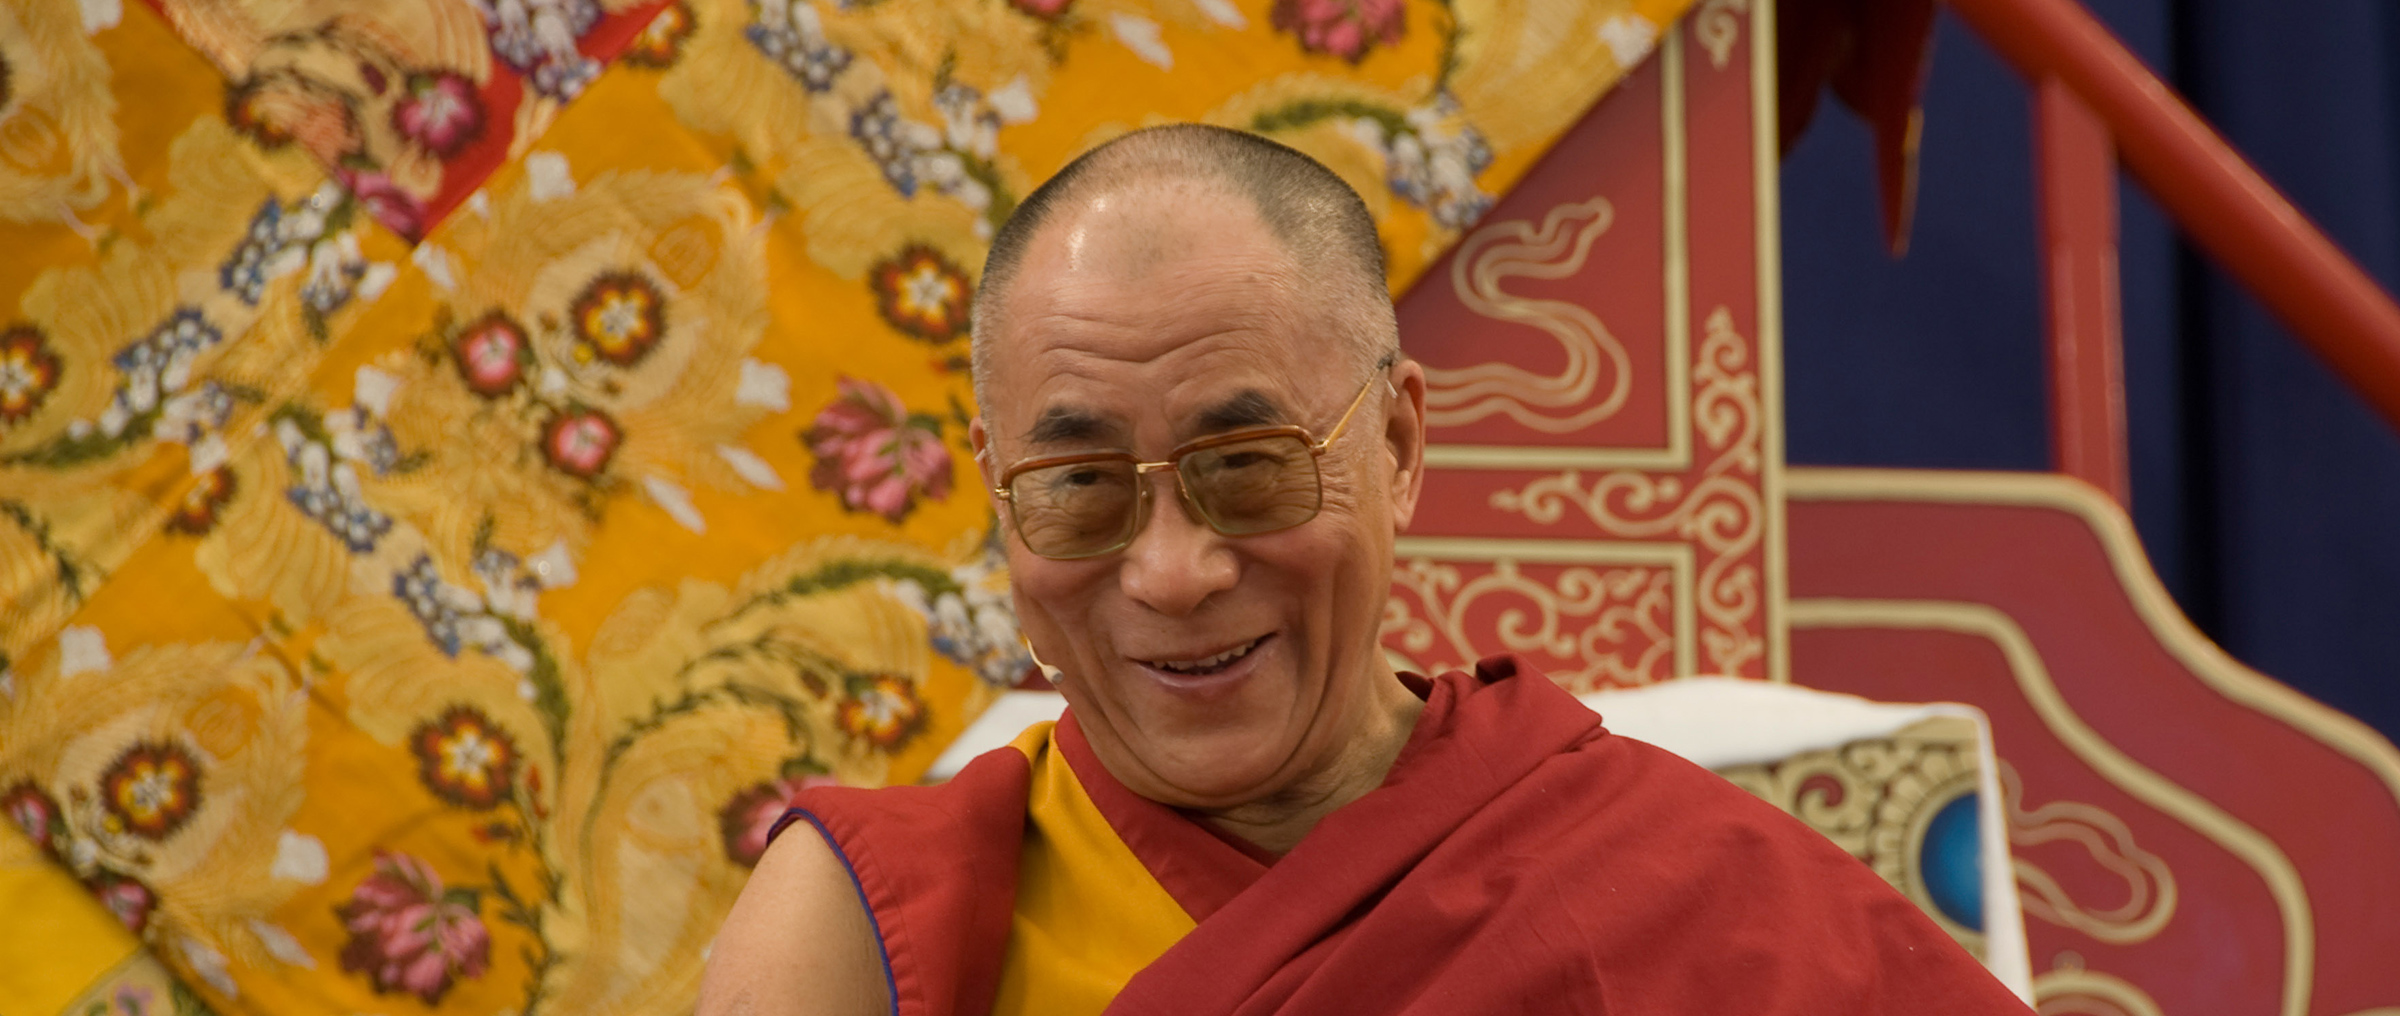 s.h. dalai lama